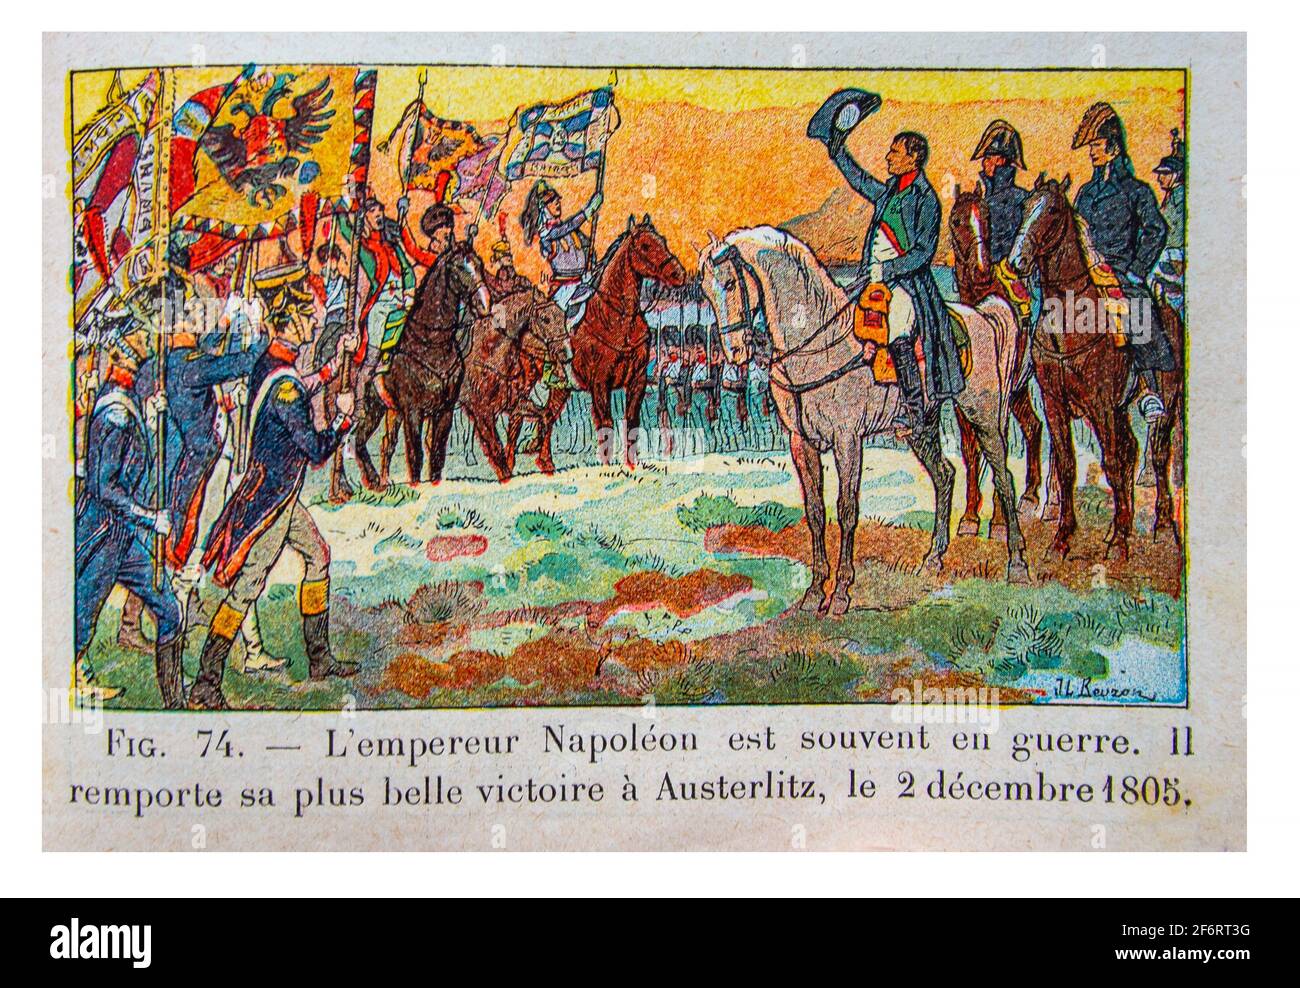 Storia, Francia, Napoleone ad Austerlitz, il 2.of december 1805. (Histoire de France , Cours Elémentaire 1ere anné, illustrazione di J & L Beuzon, Foto Stock